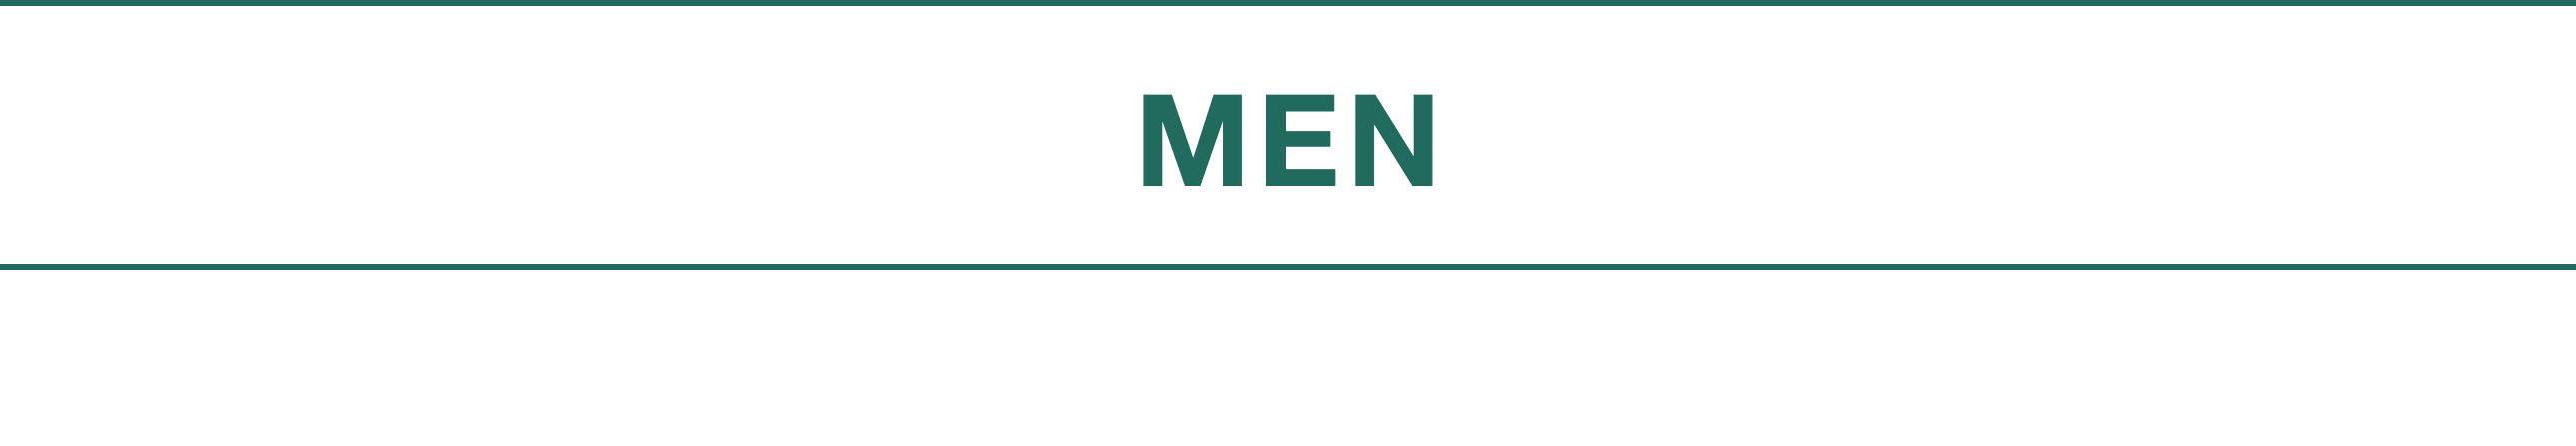 MEN_TITLE_1-min